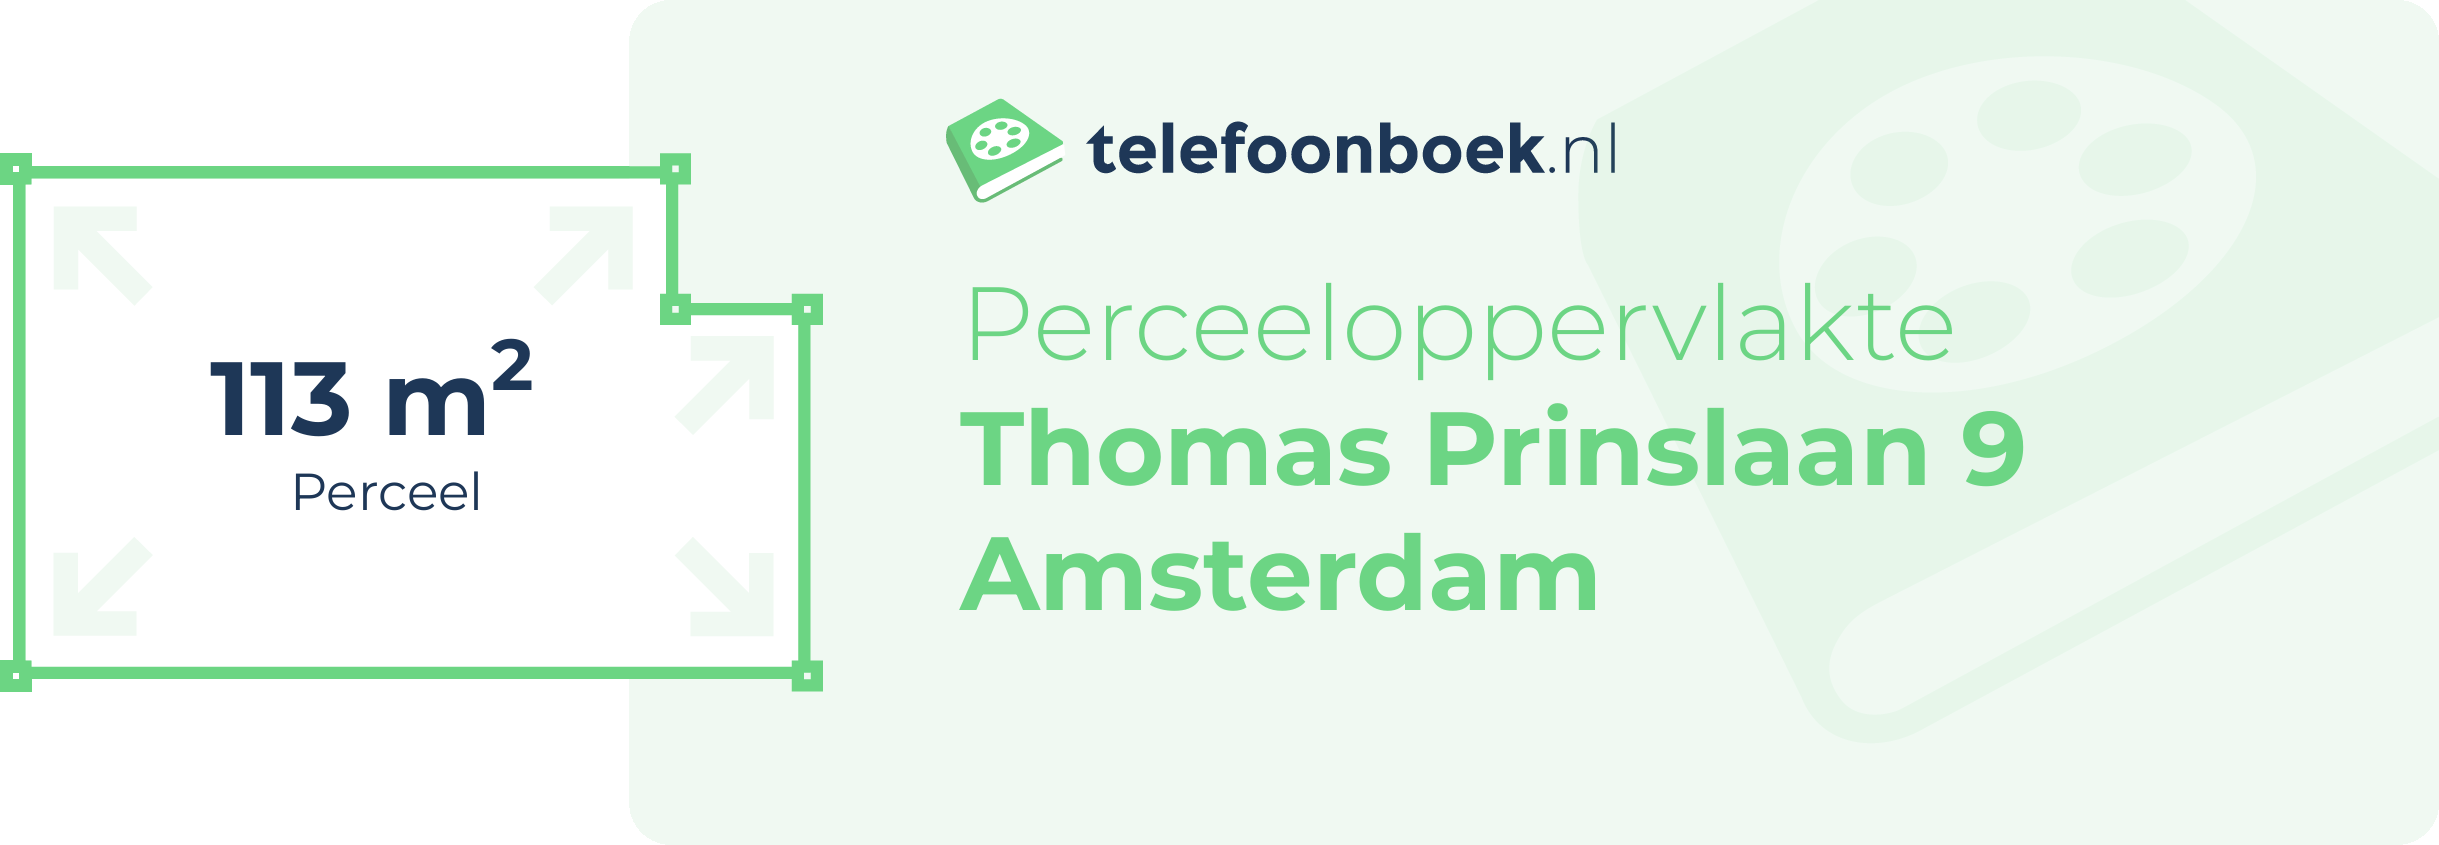 Perceeloppervlakte Thomas Prinslaan 9 Amsterdam